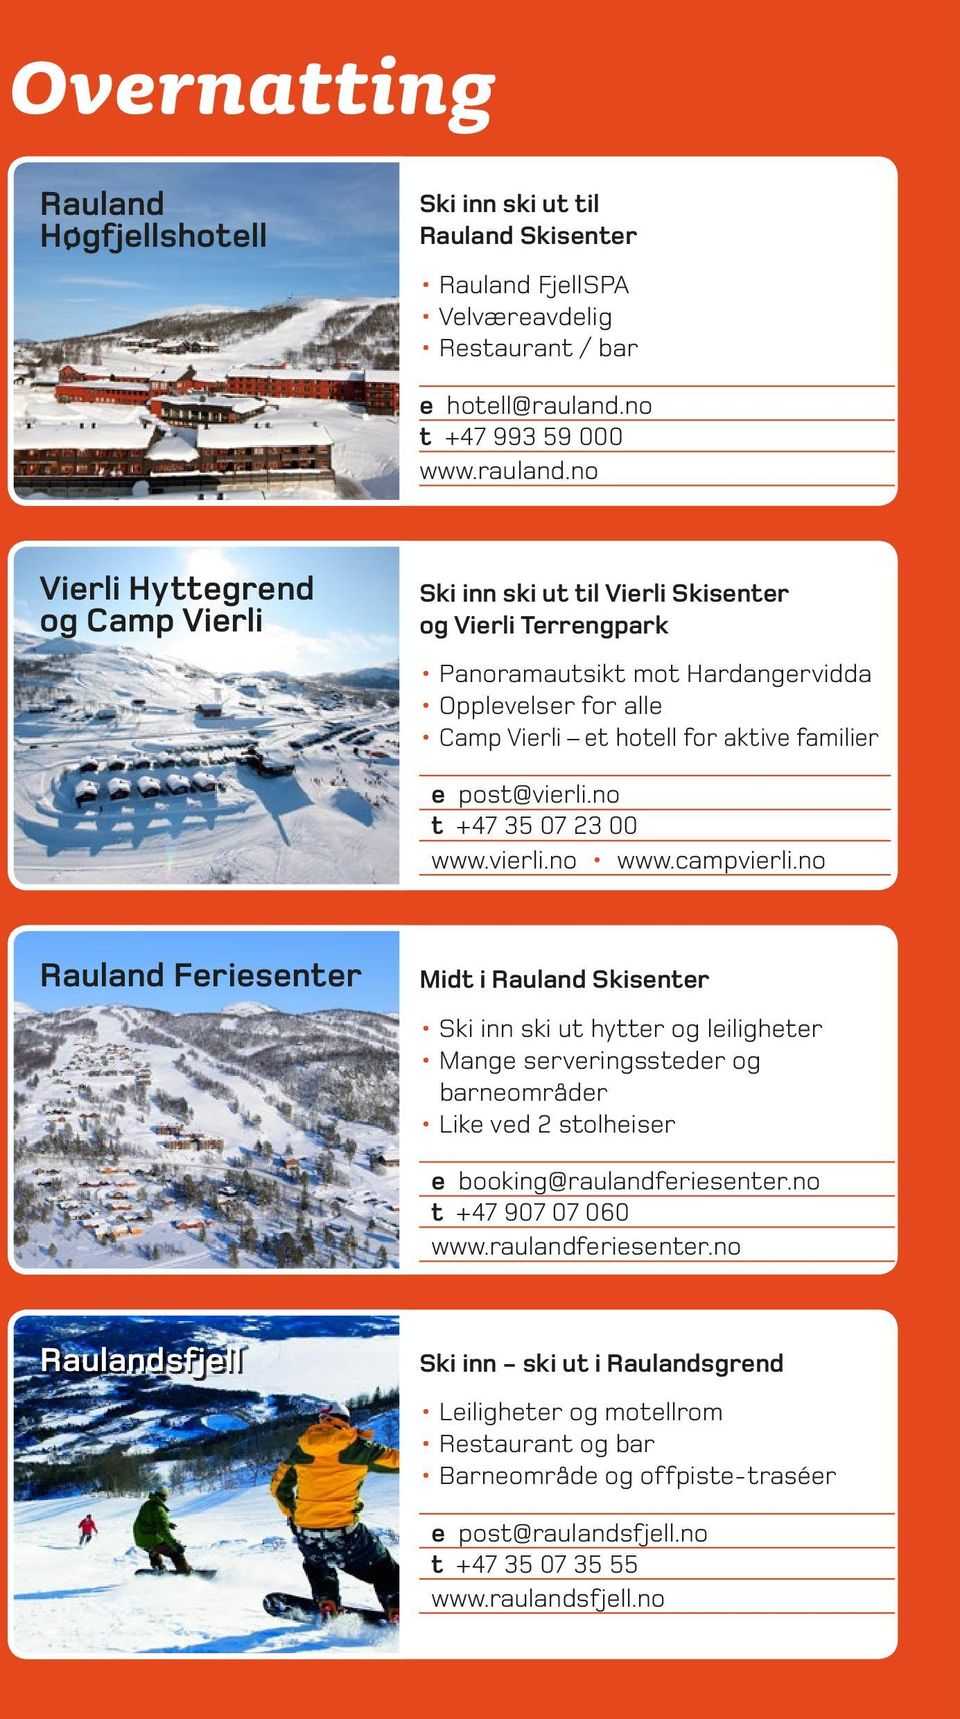 no Vierli Hyttegrend og Camp Vierli Ski inn ski ut til Vierli Skisenter og Vierli Terrengpark Panoramautsikt mot Hardangervidda Opplevelser for alle Camp Vierli et hotell for aktive familier e